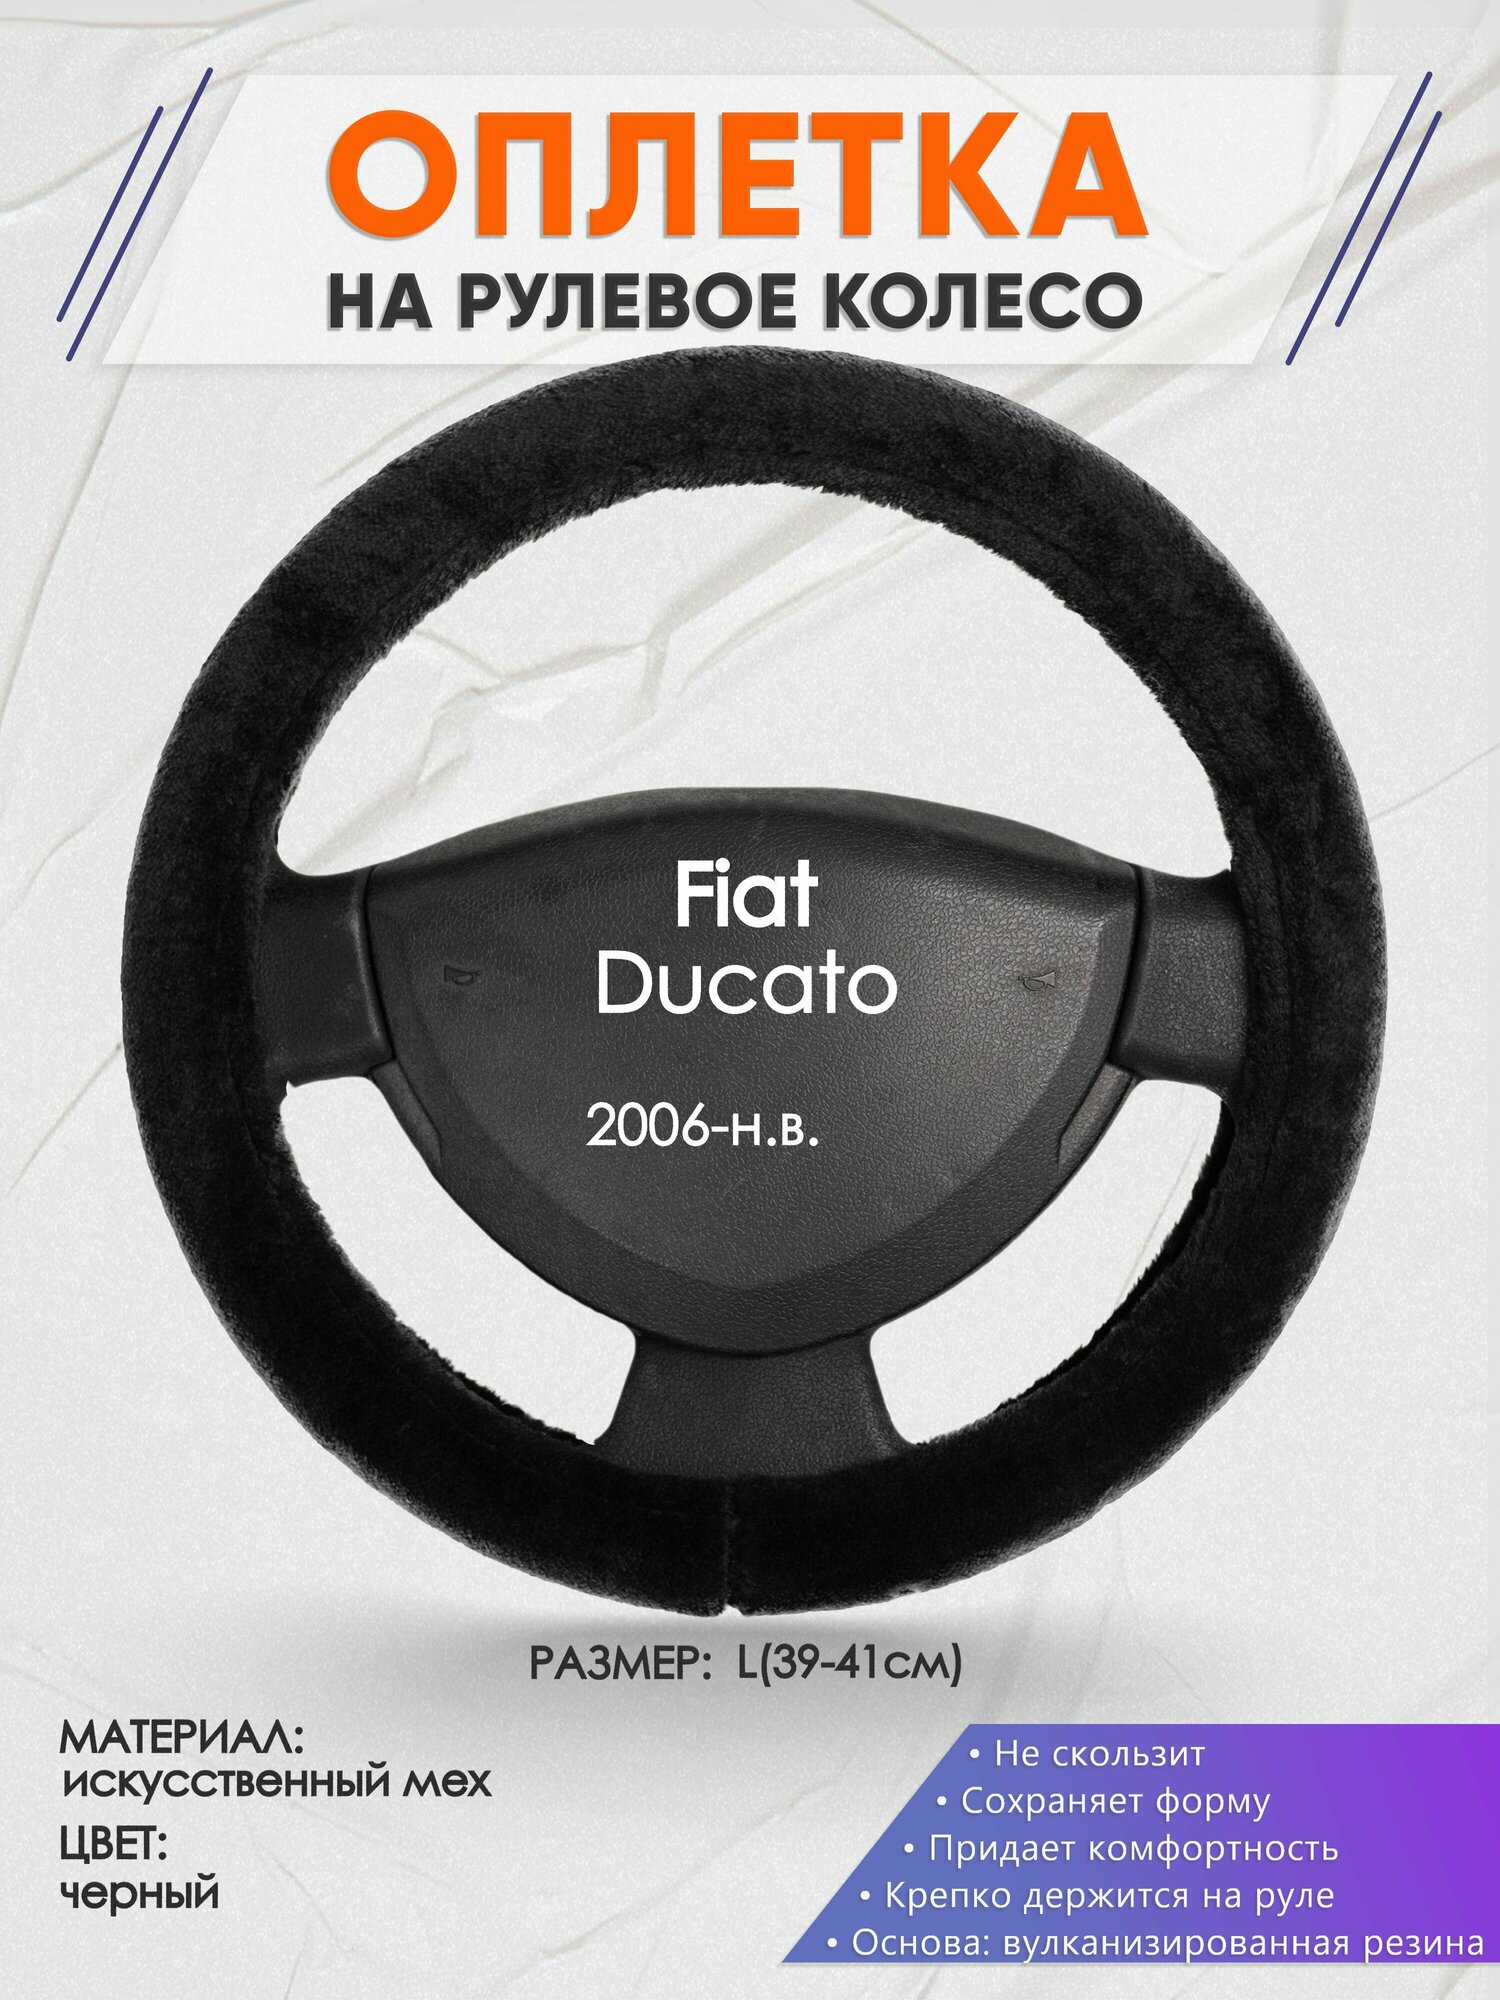 Оплетка на руль для Fiat Ducato (Фиат Дукато) 2006-н. в, L(39-41см), Искусственный мех 45